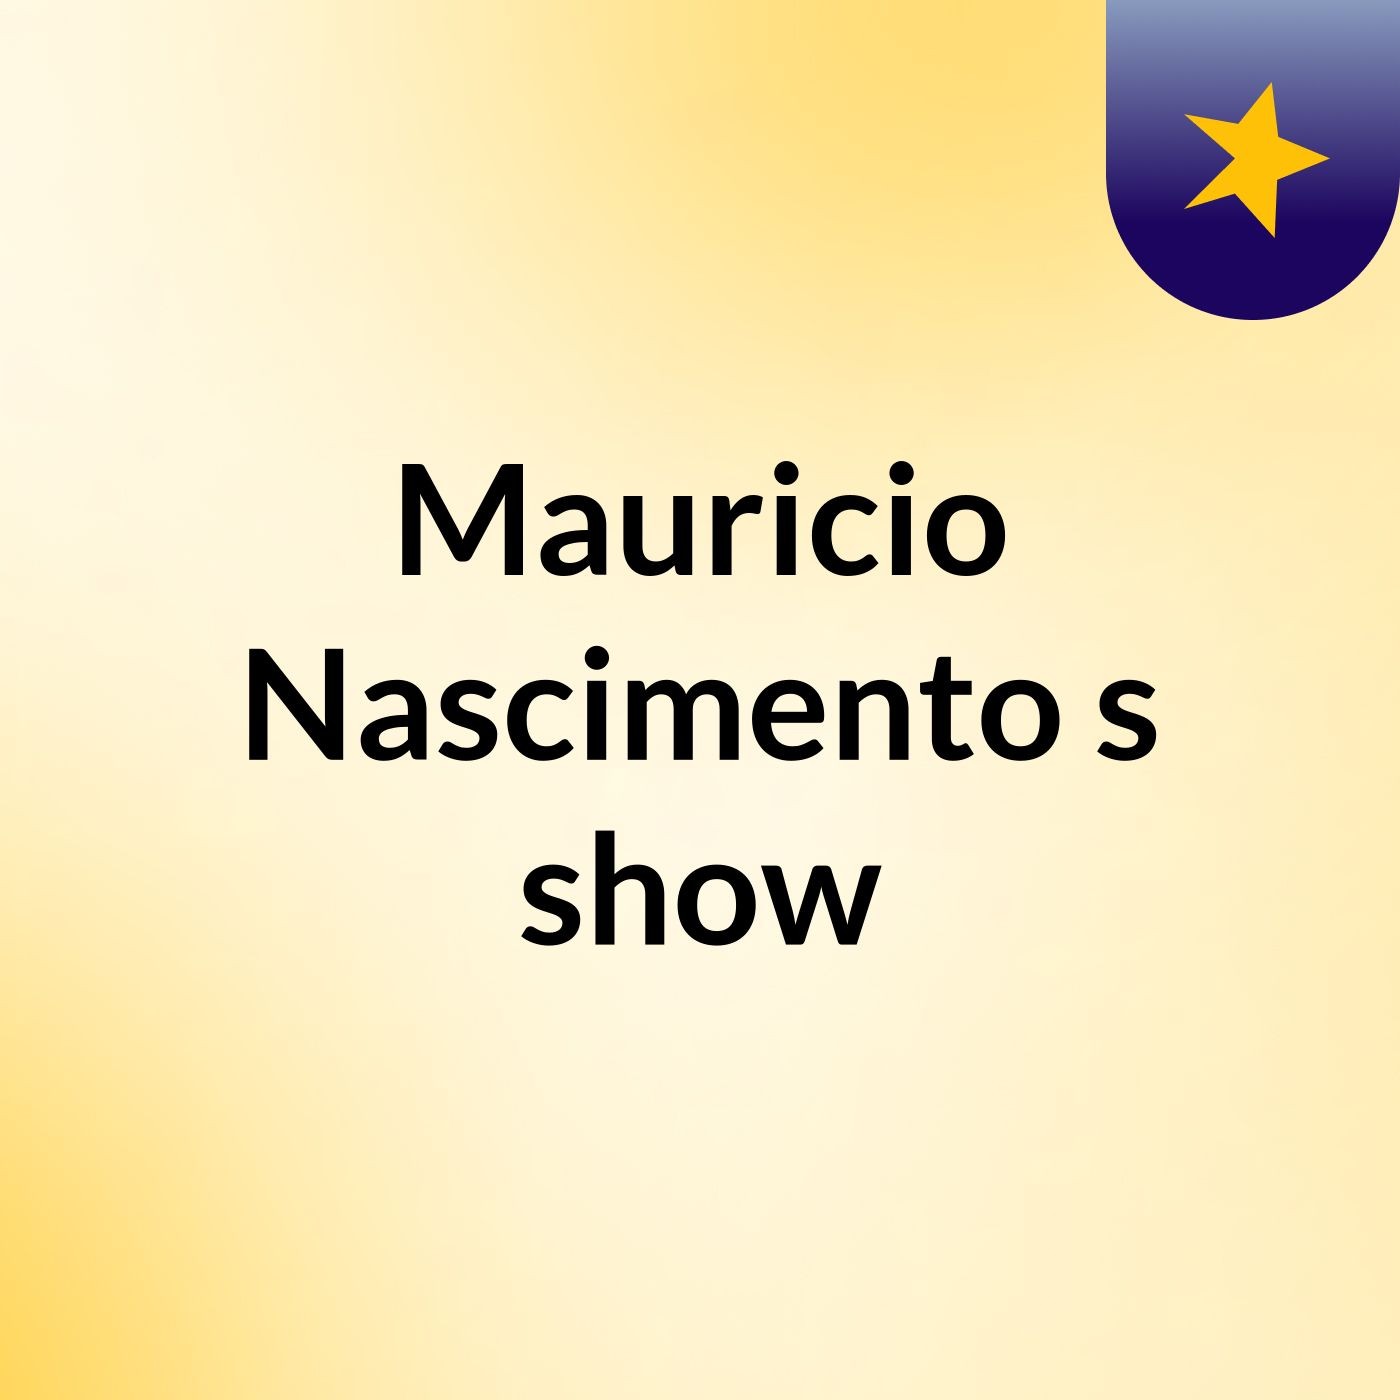 Mauricio Nascimento's show